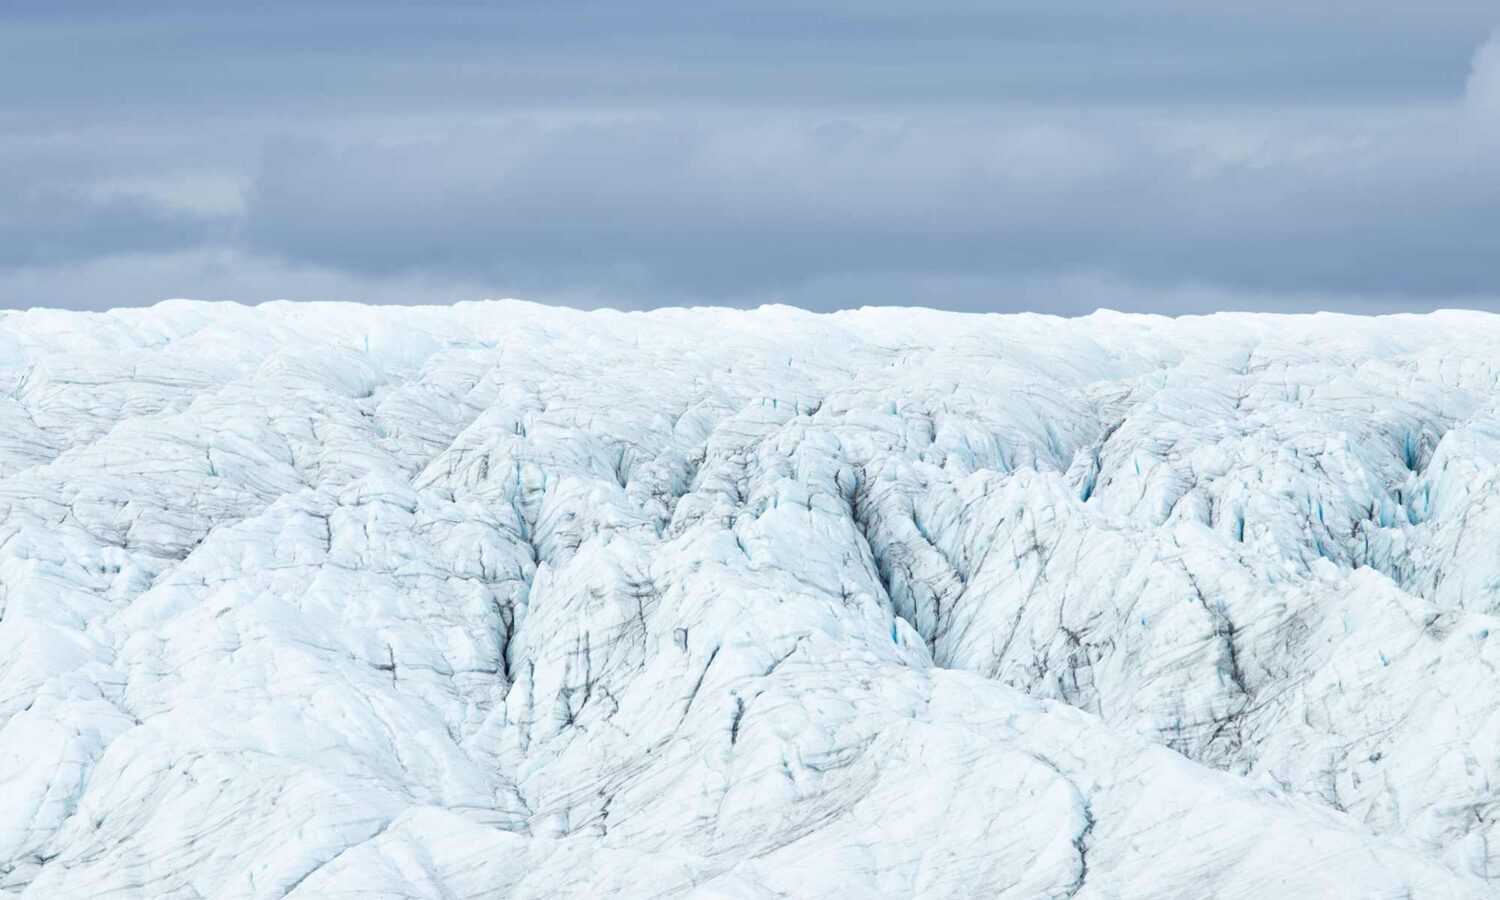 De grilligheid van de Groenlandse ijskap